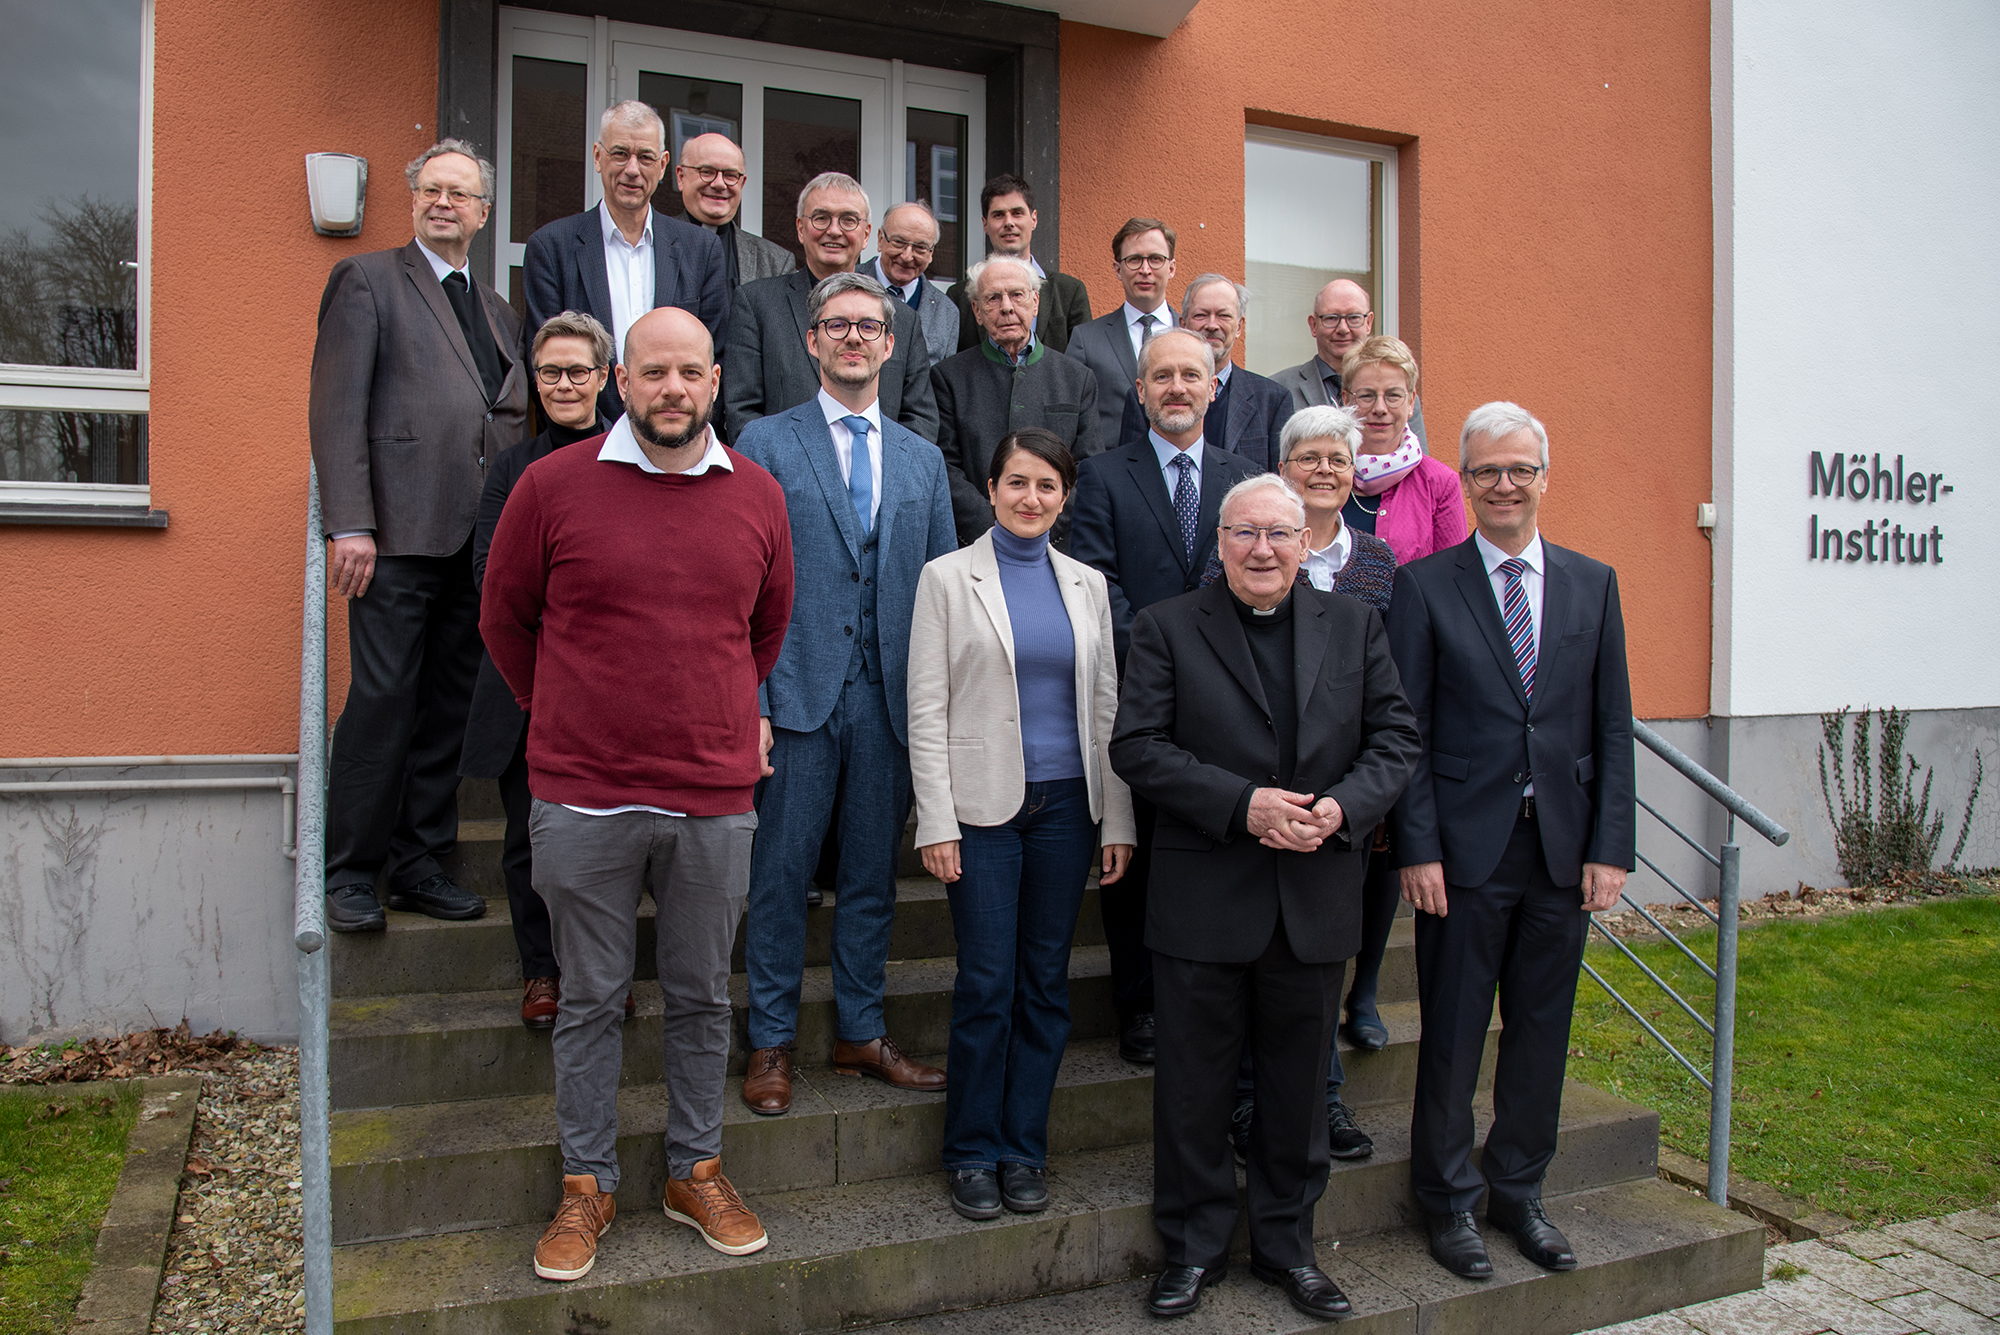 Ökumene-Expertenkreis spricht über Synodalität und Ethik. Wissenschaftlicher Beirat des Möhler-Instituts für Ökumenik tagt in Paderborn zu aktuellen Fragen